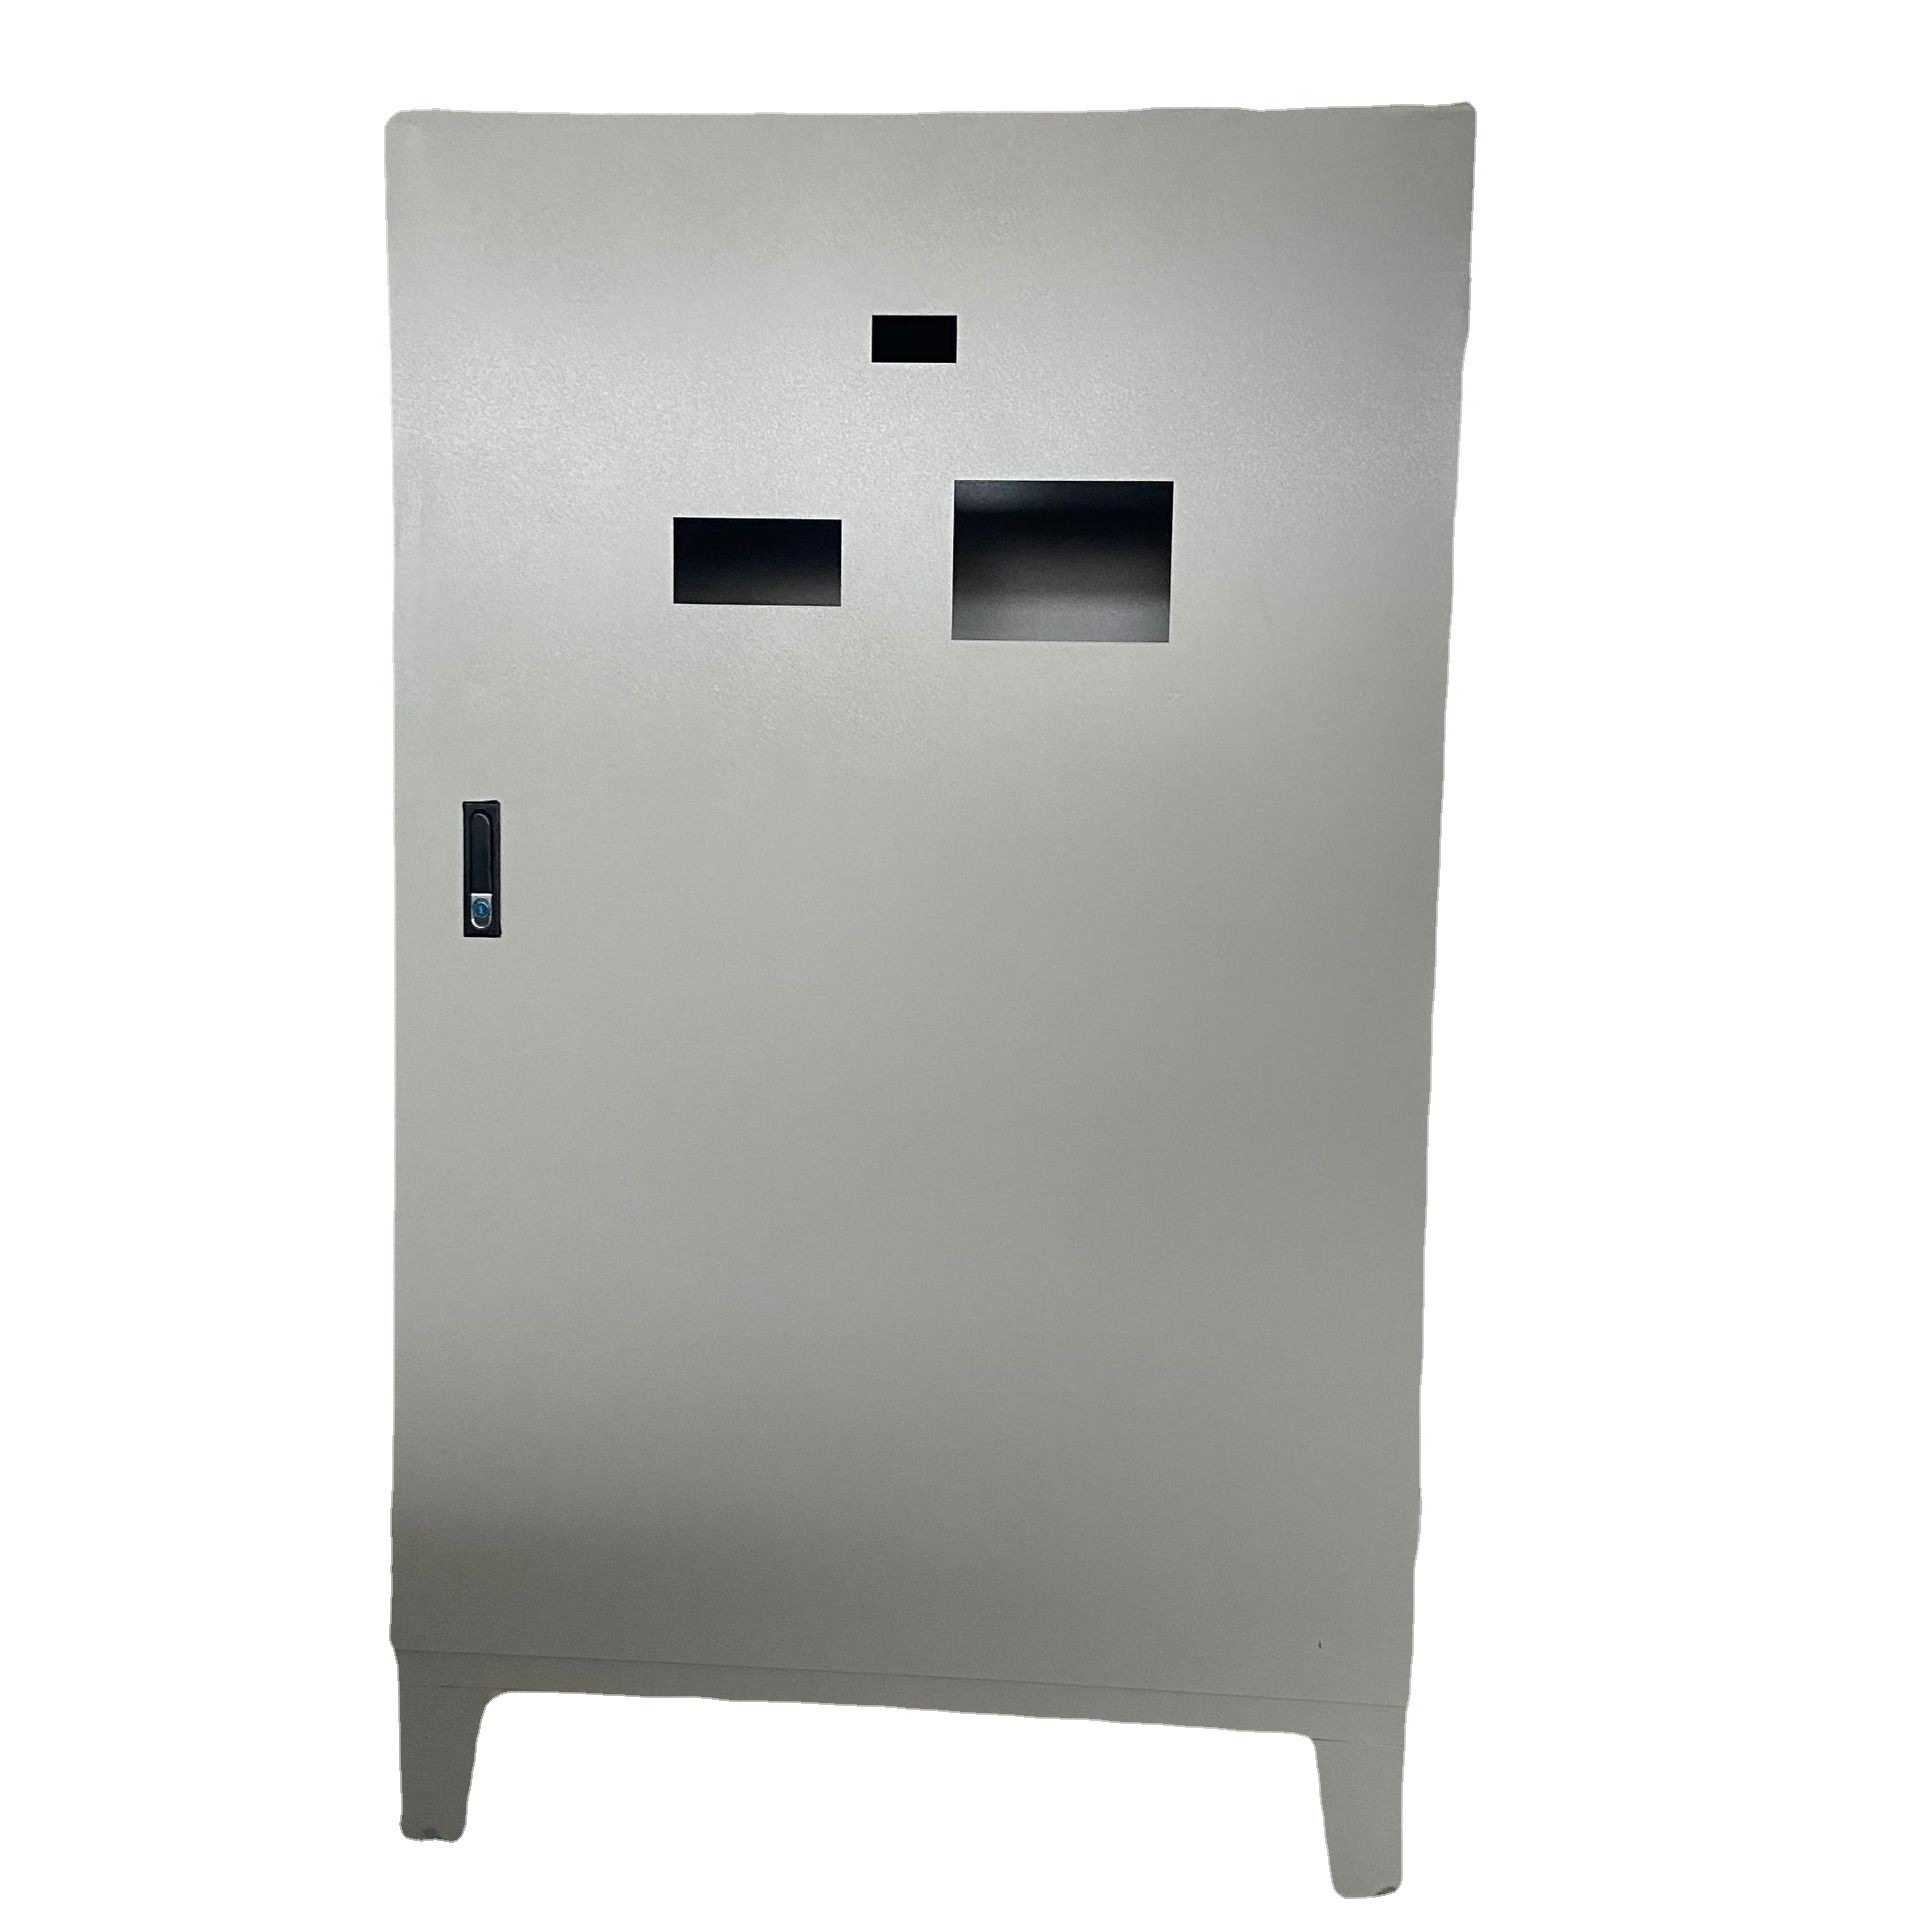 配电柜 厂家定制 镀锌材质 室内专用 落地配电柜